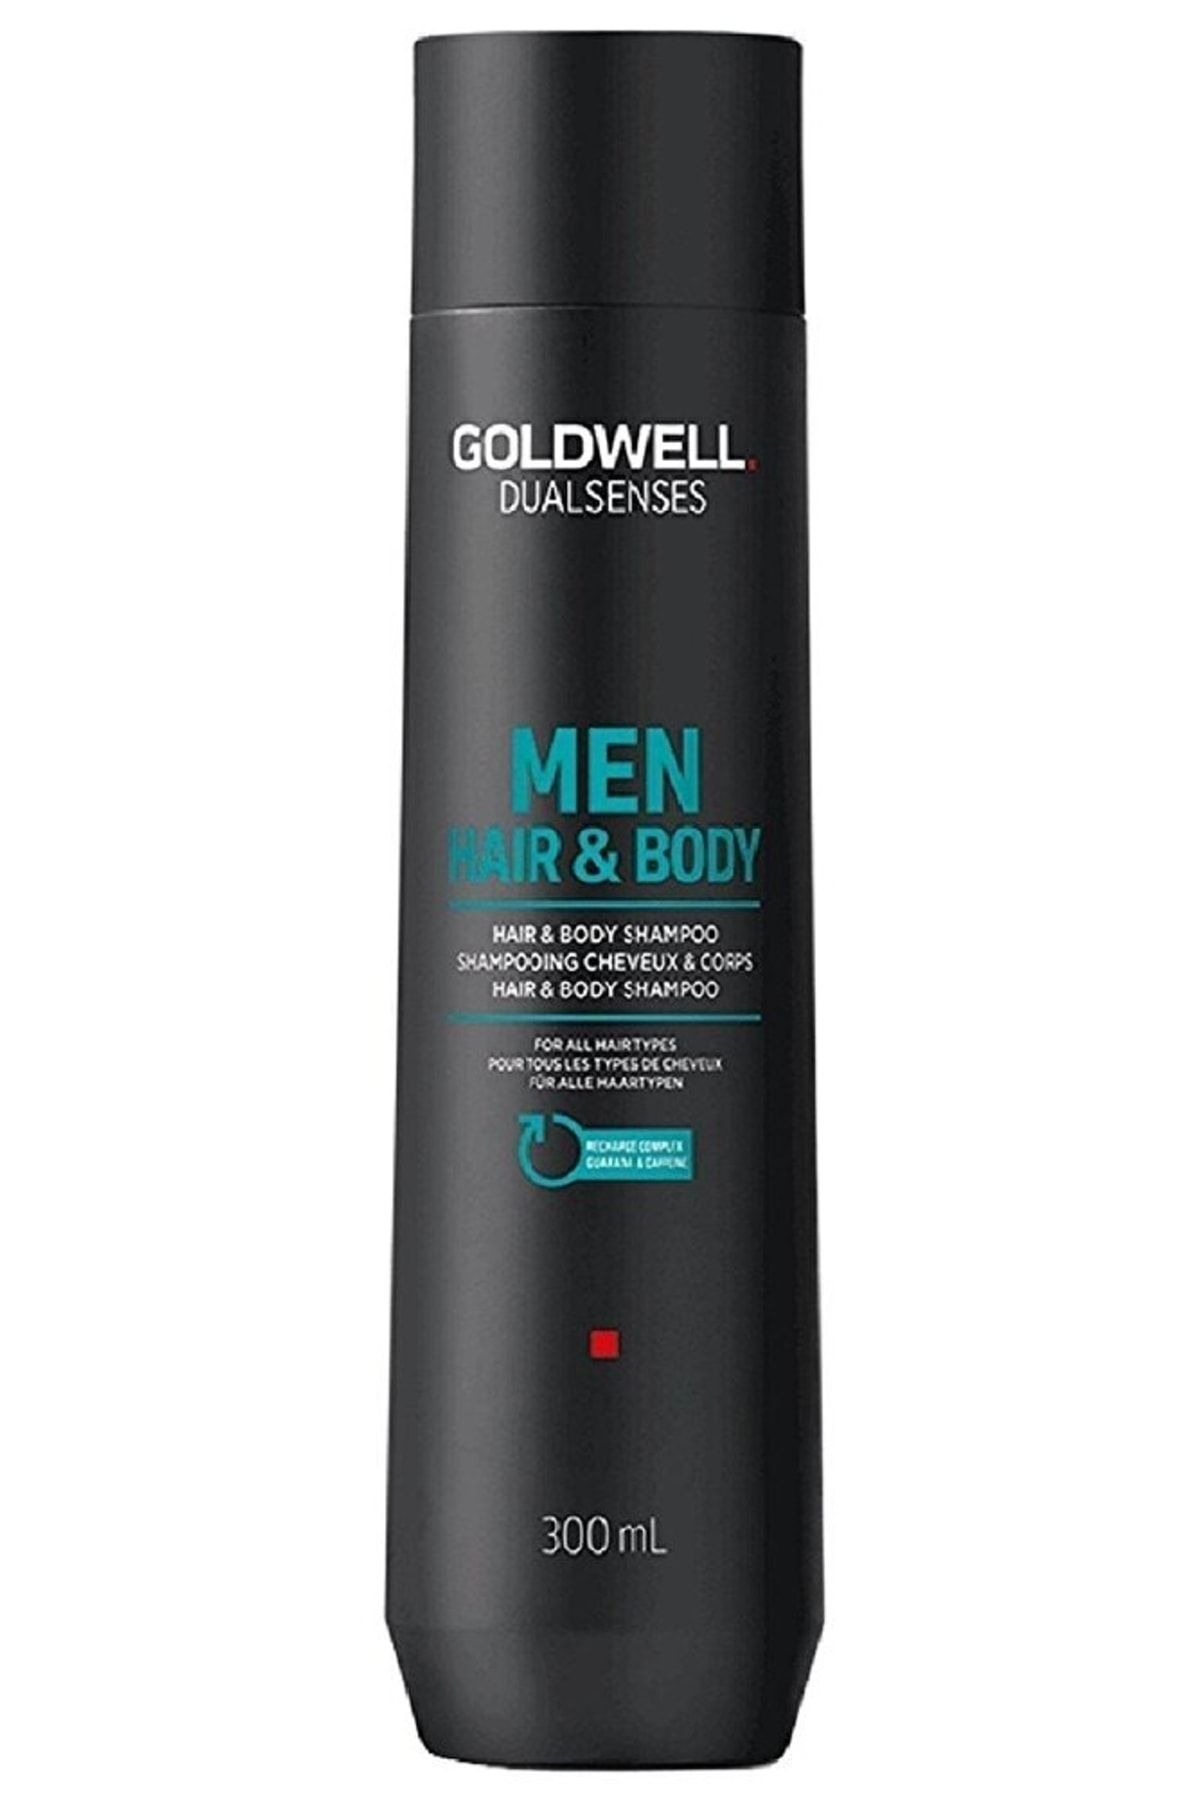 GOLDWELL Men Saç Ve Vücut Şampuanı 300ml